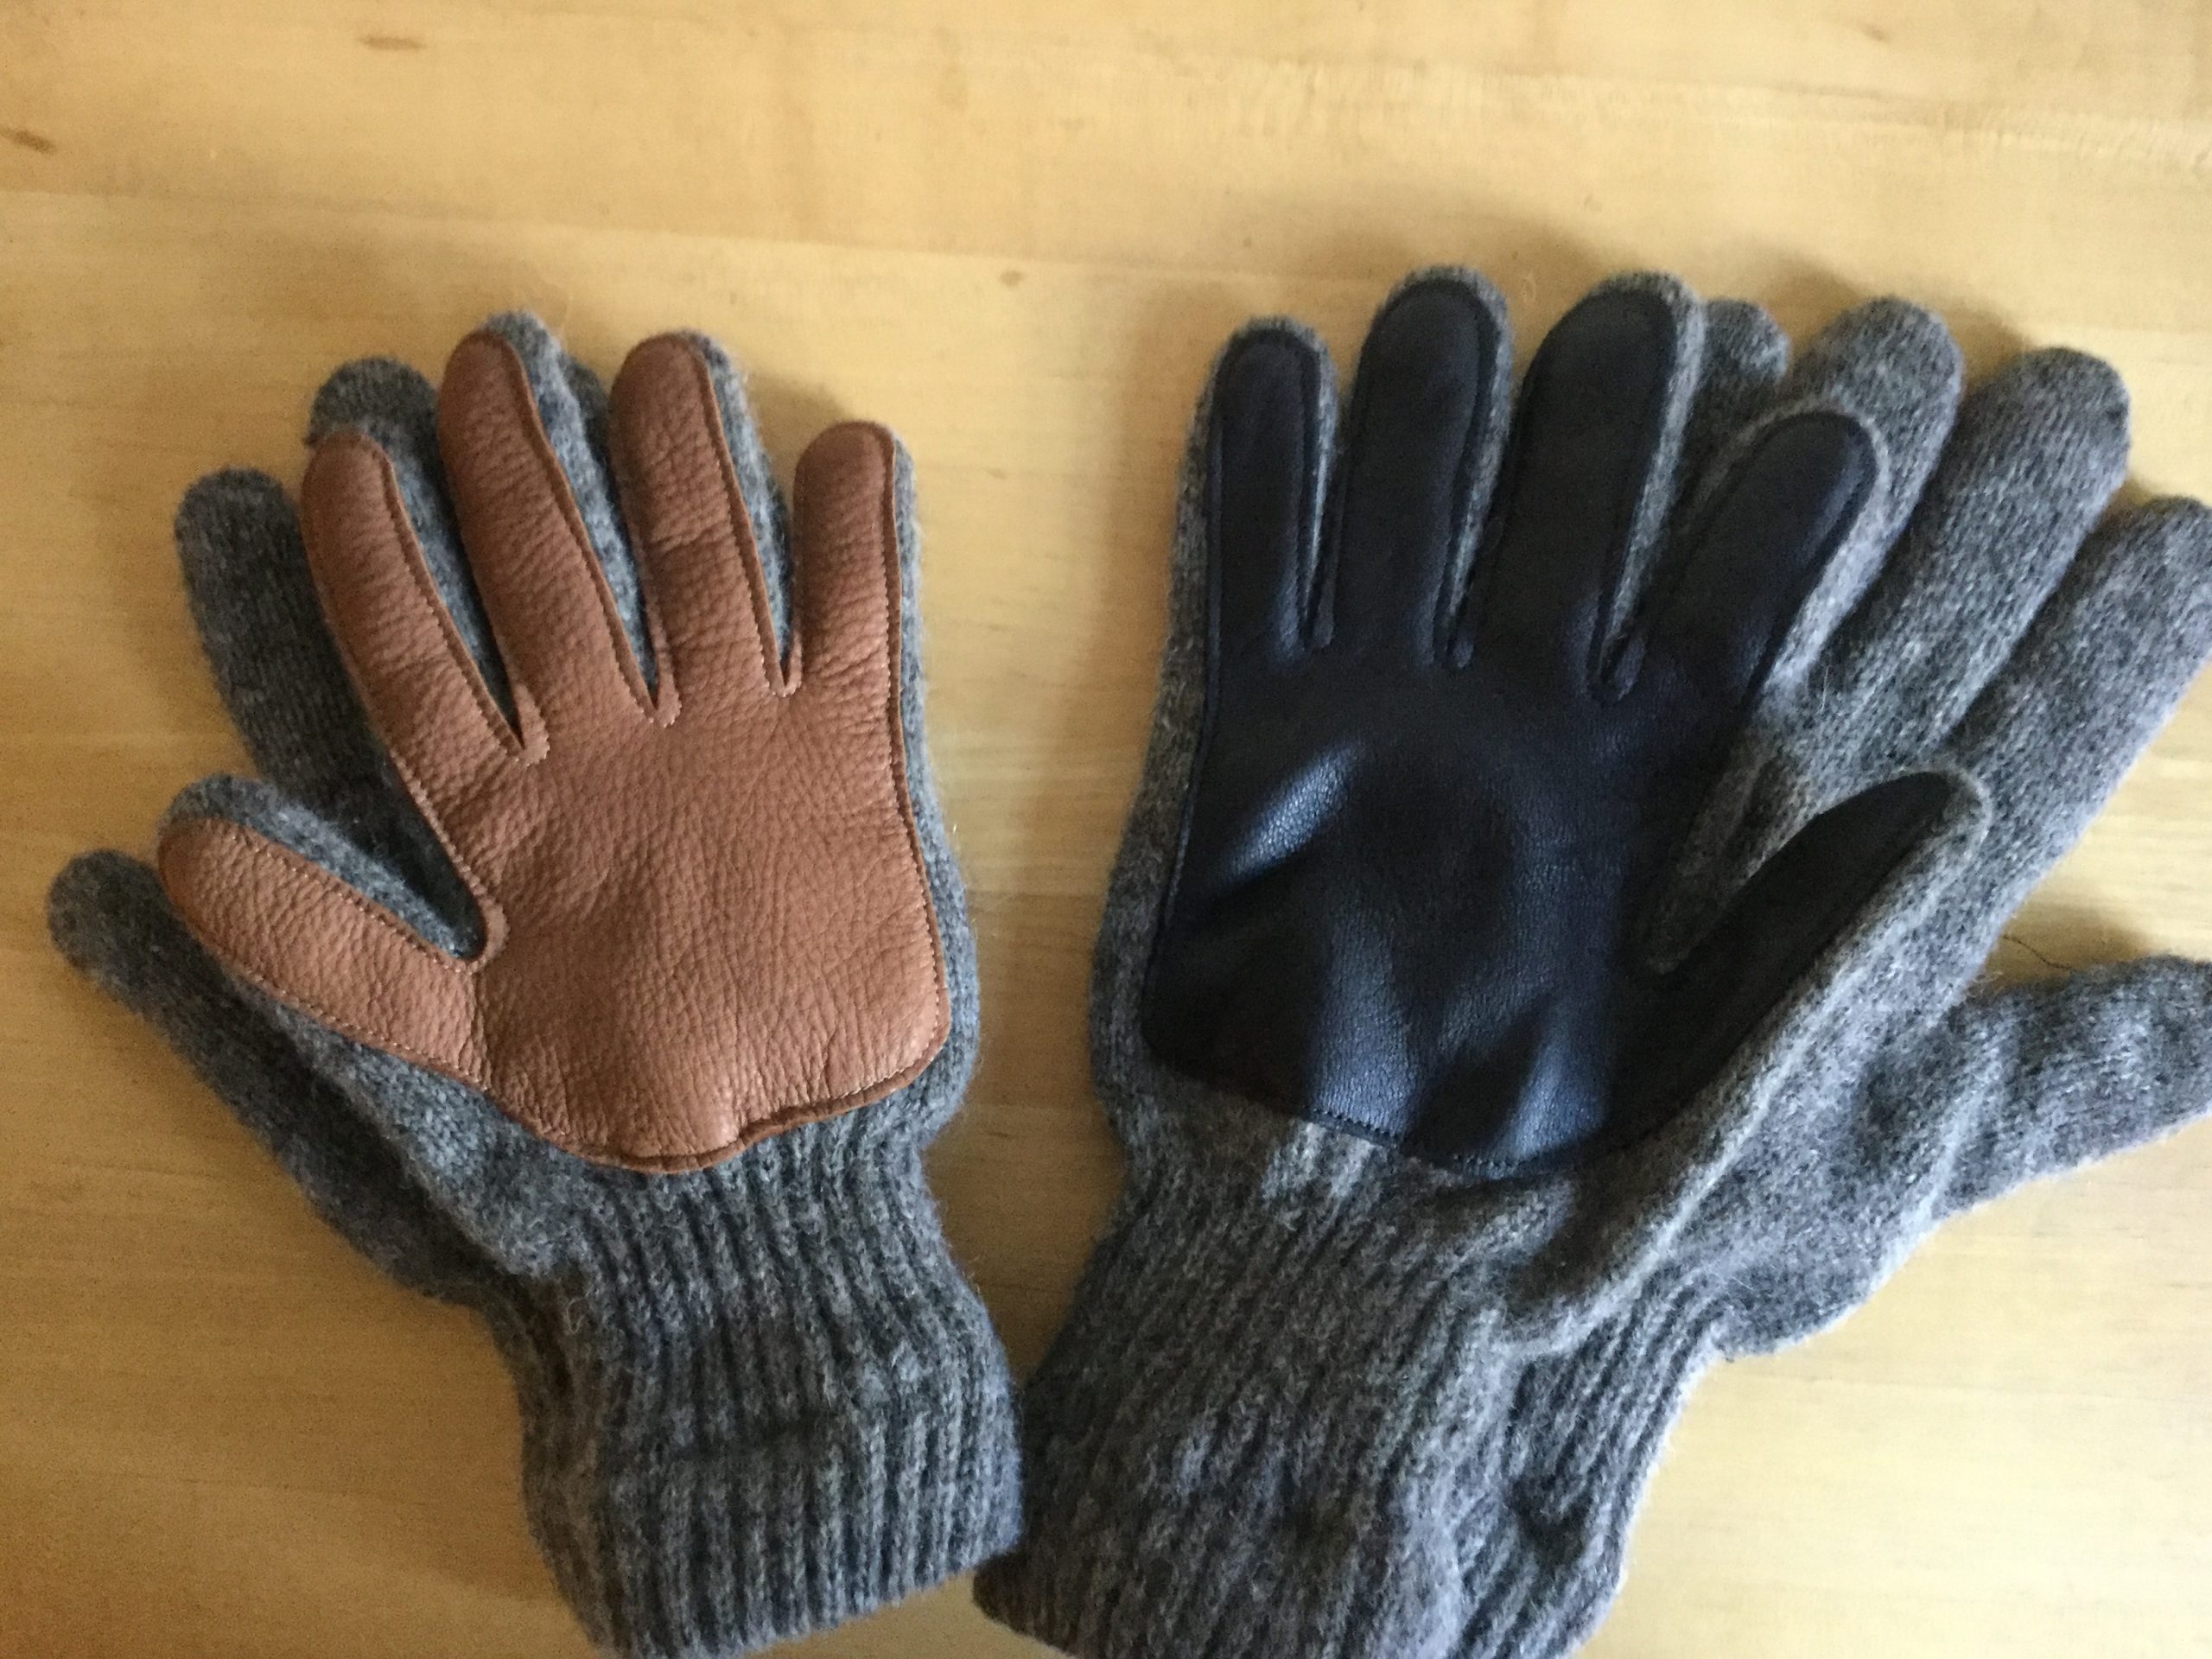 Longfield Farm Gloves – Longfield Farm